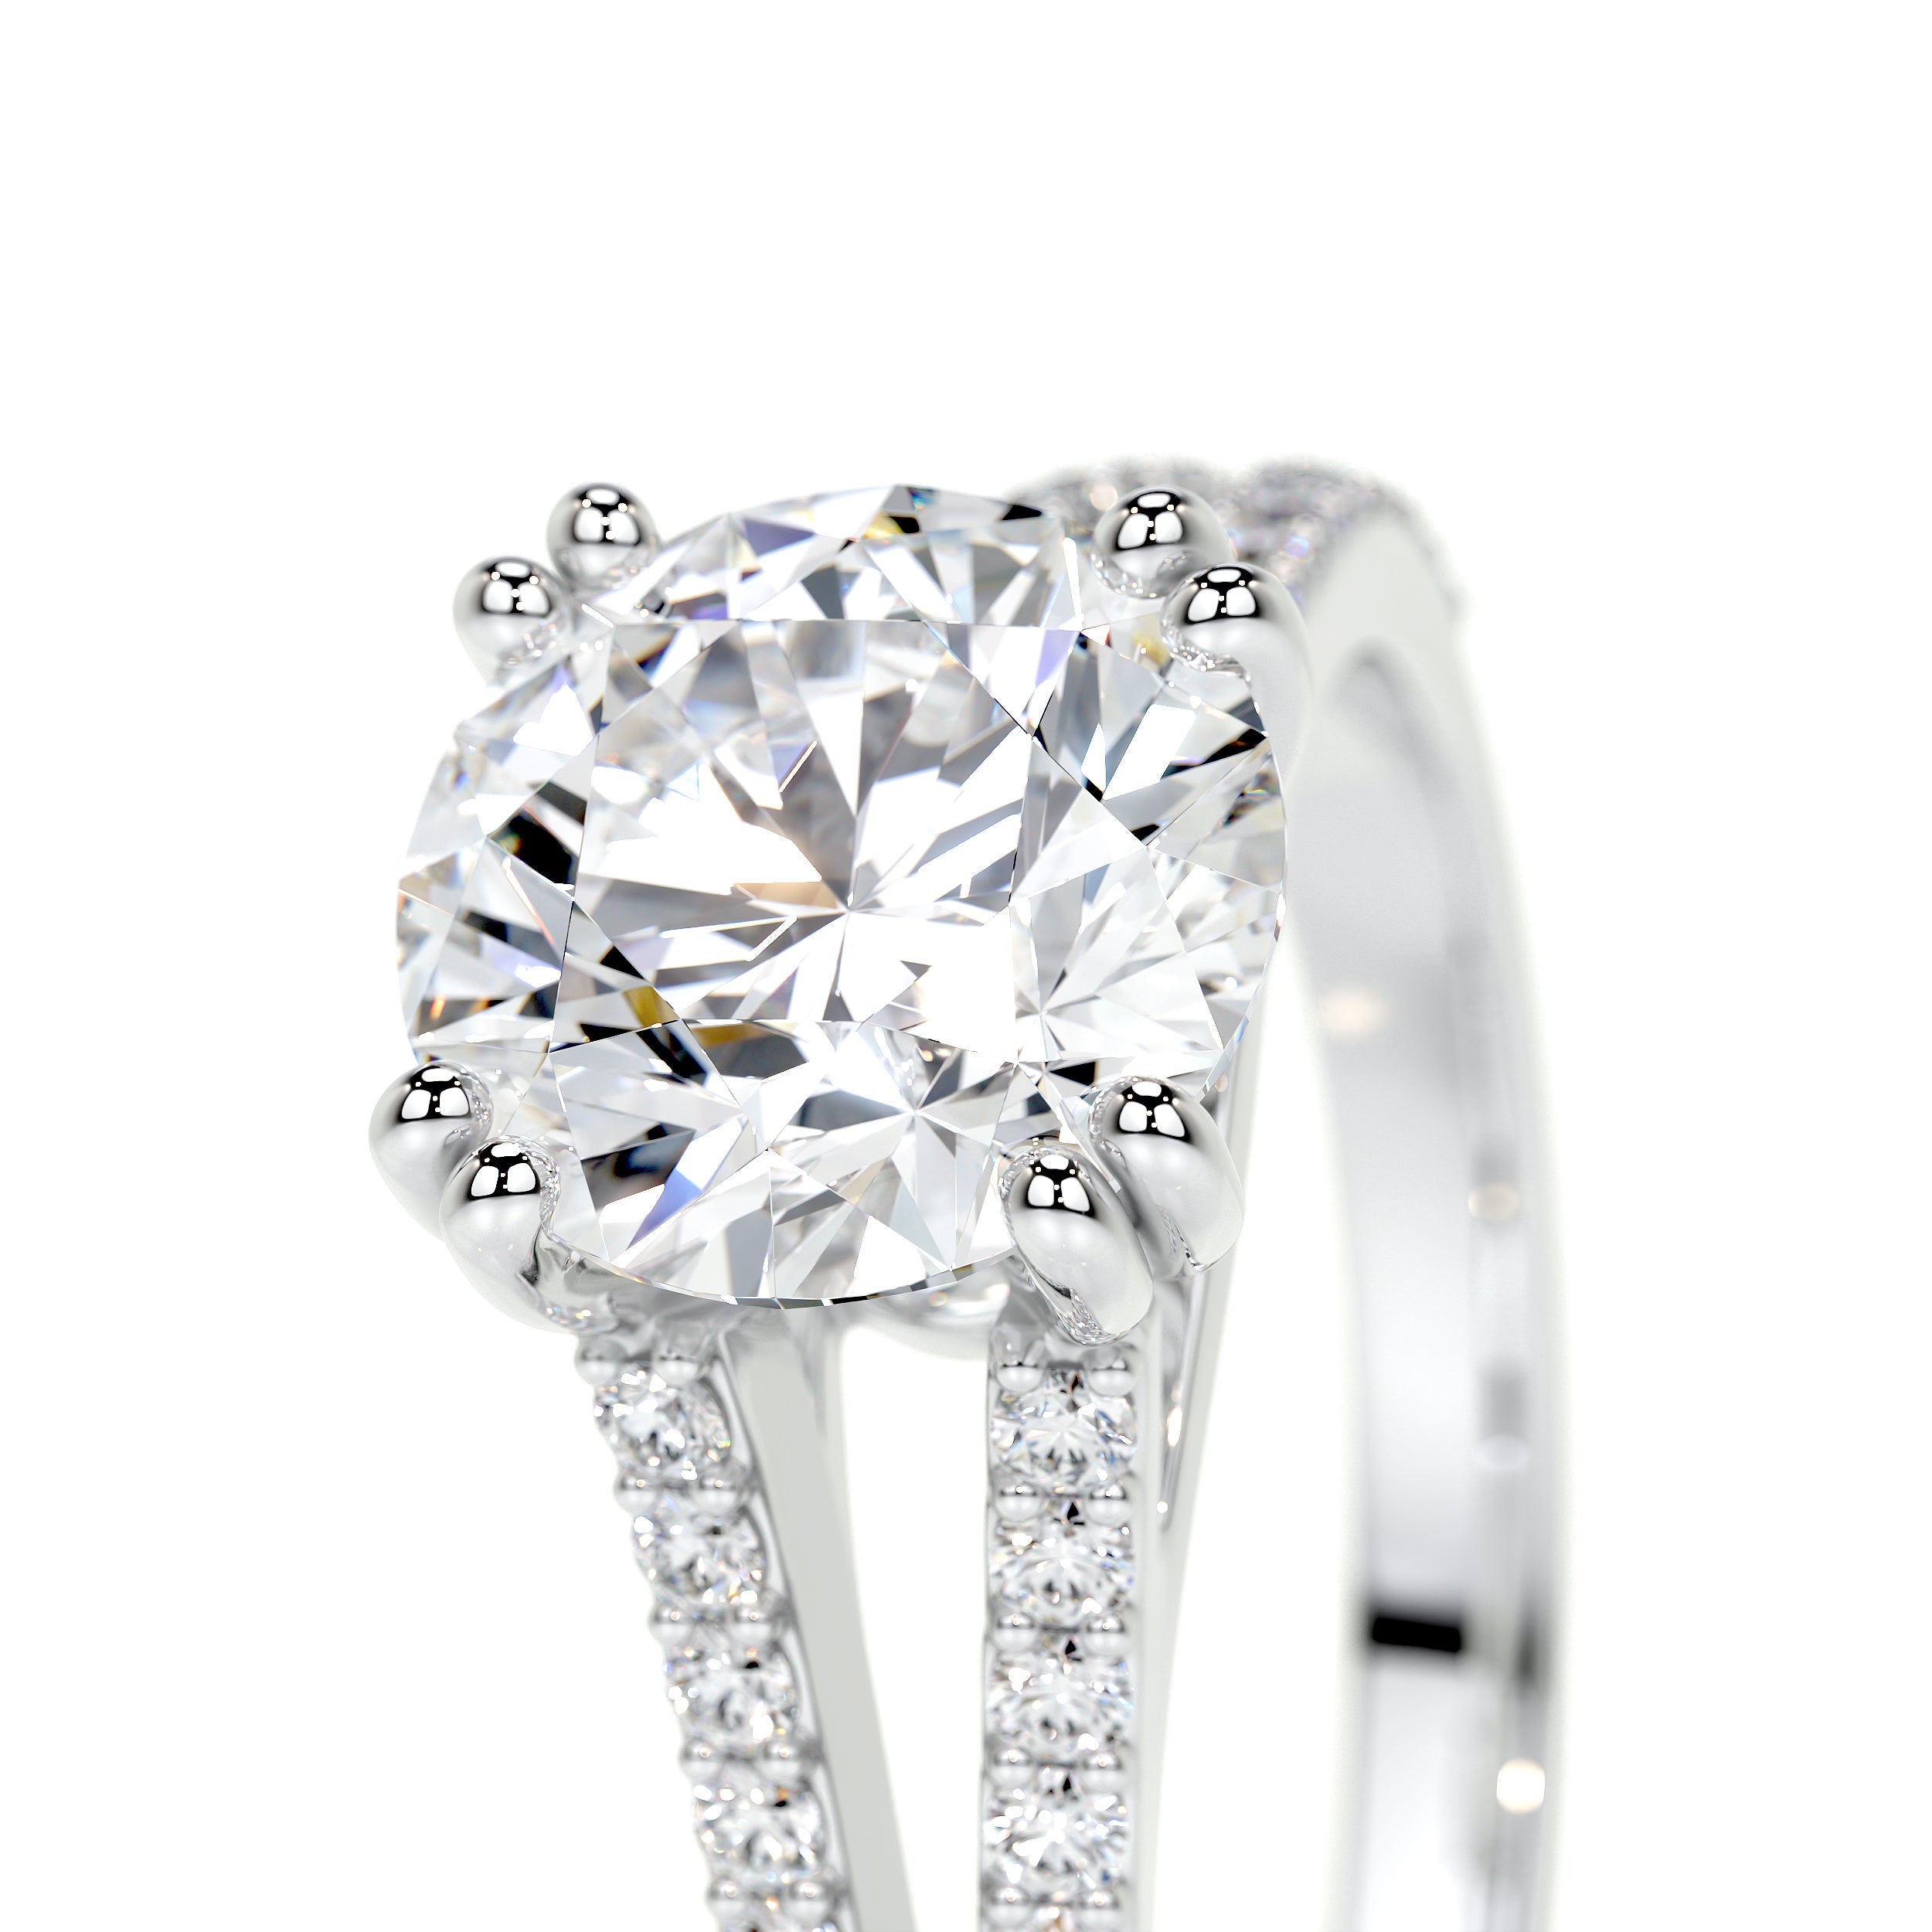 Evelyn Lab Grown Diamond Ring   (2 Carat) -18K White Gold